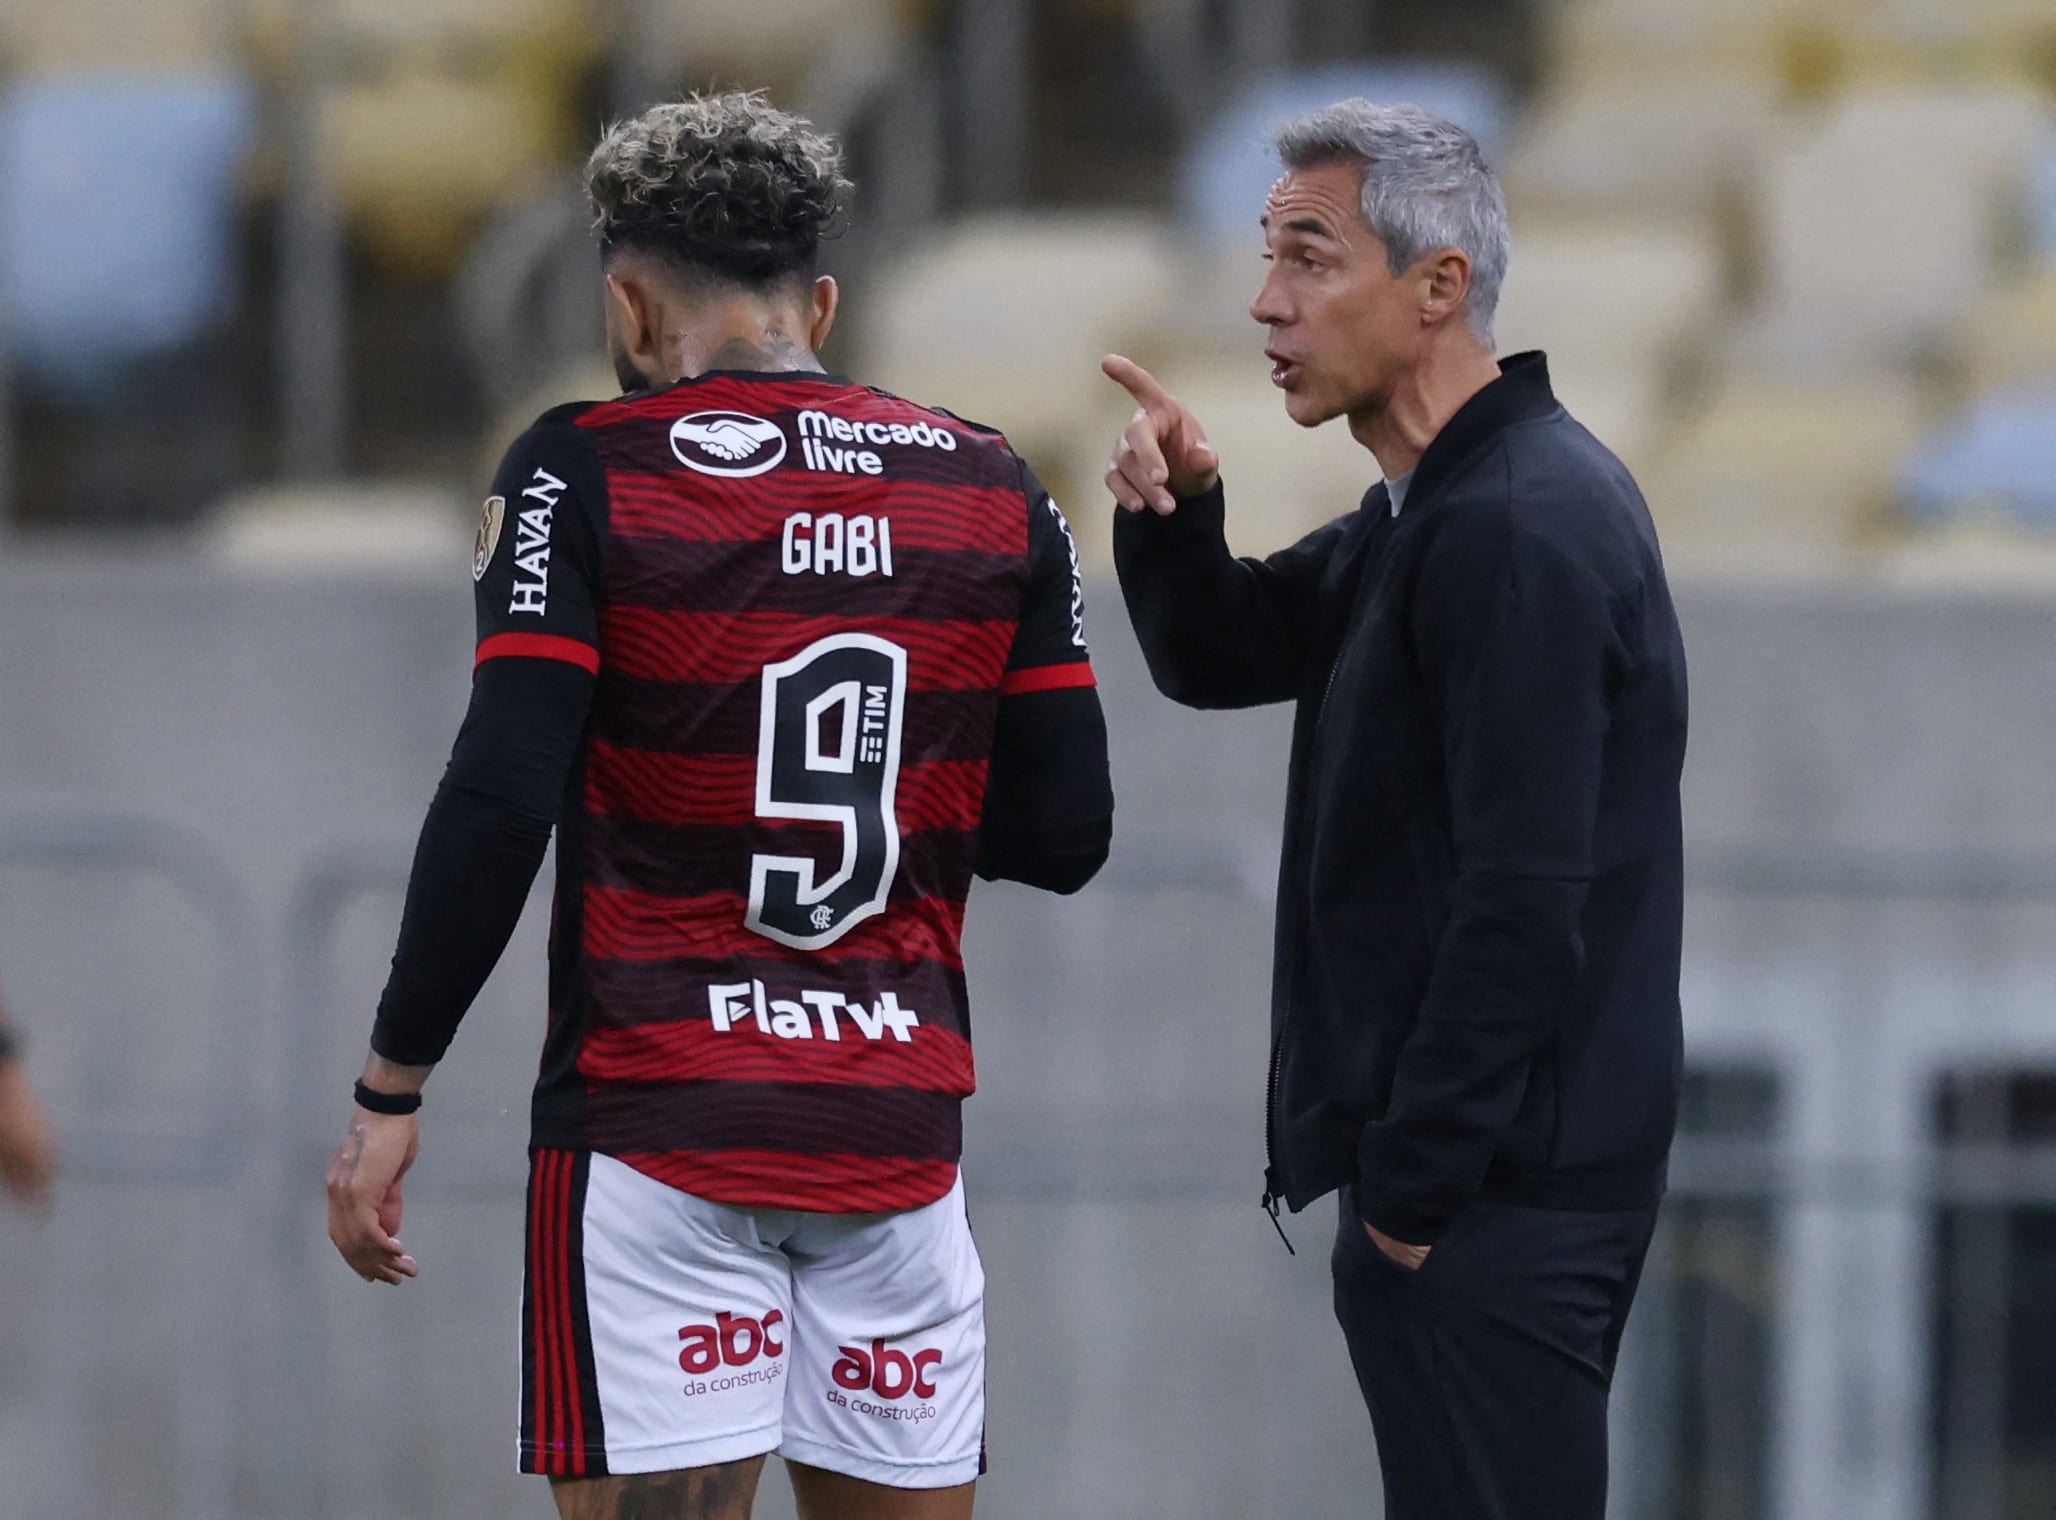 פאולו סוזה מאמן פלמנגו עם "גביגול" גבריאל ברבוסה